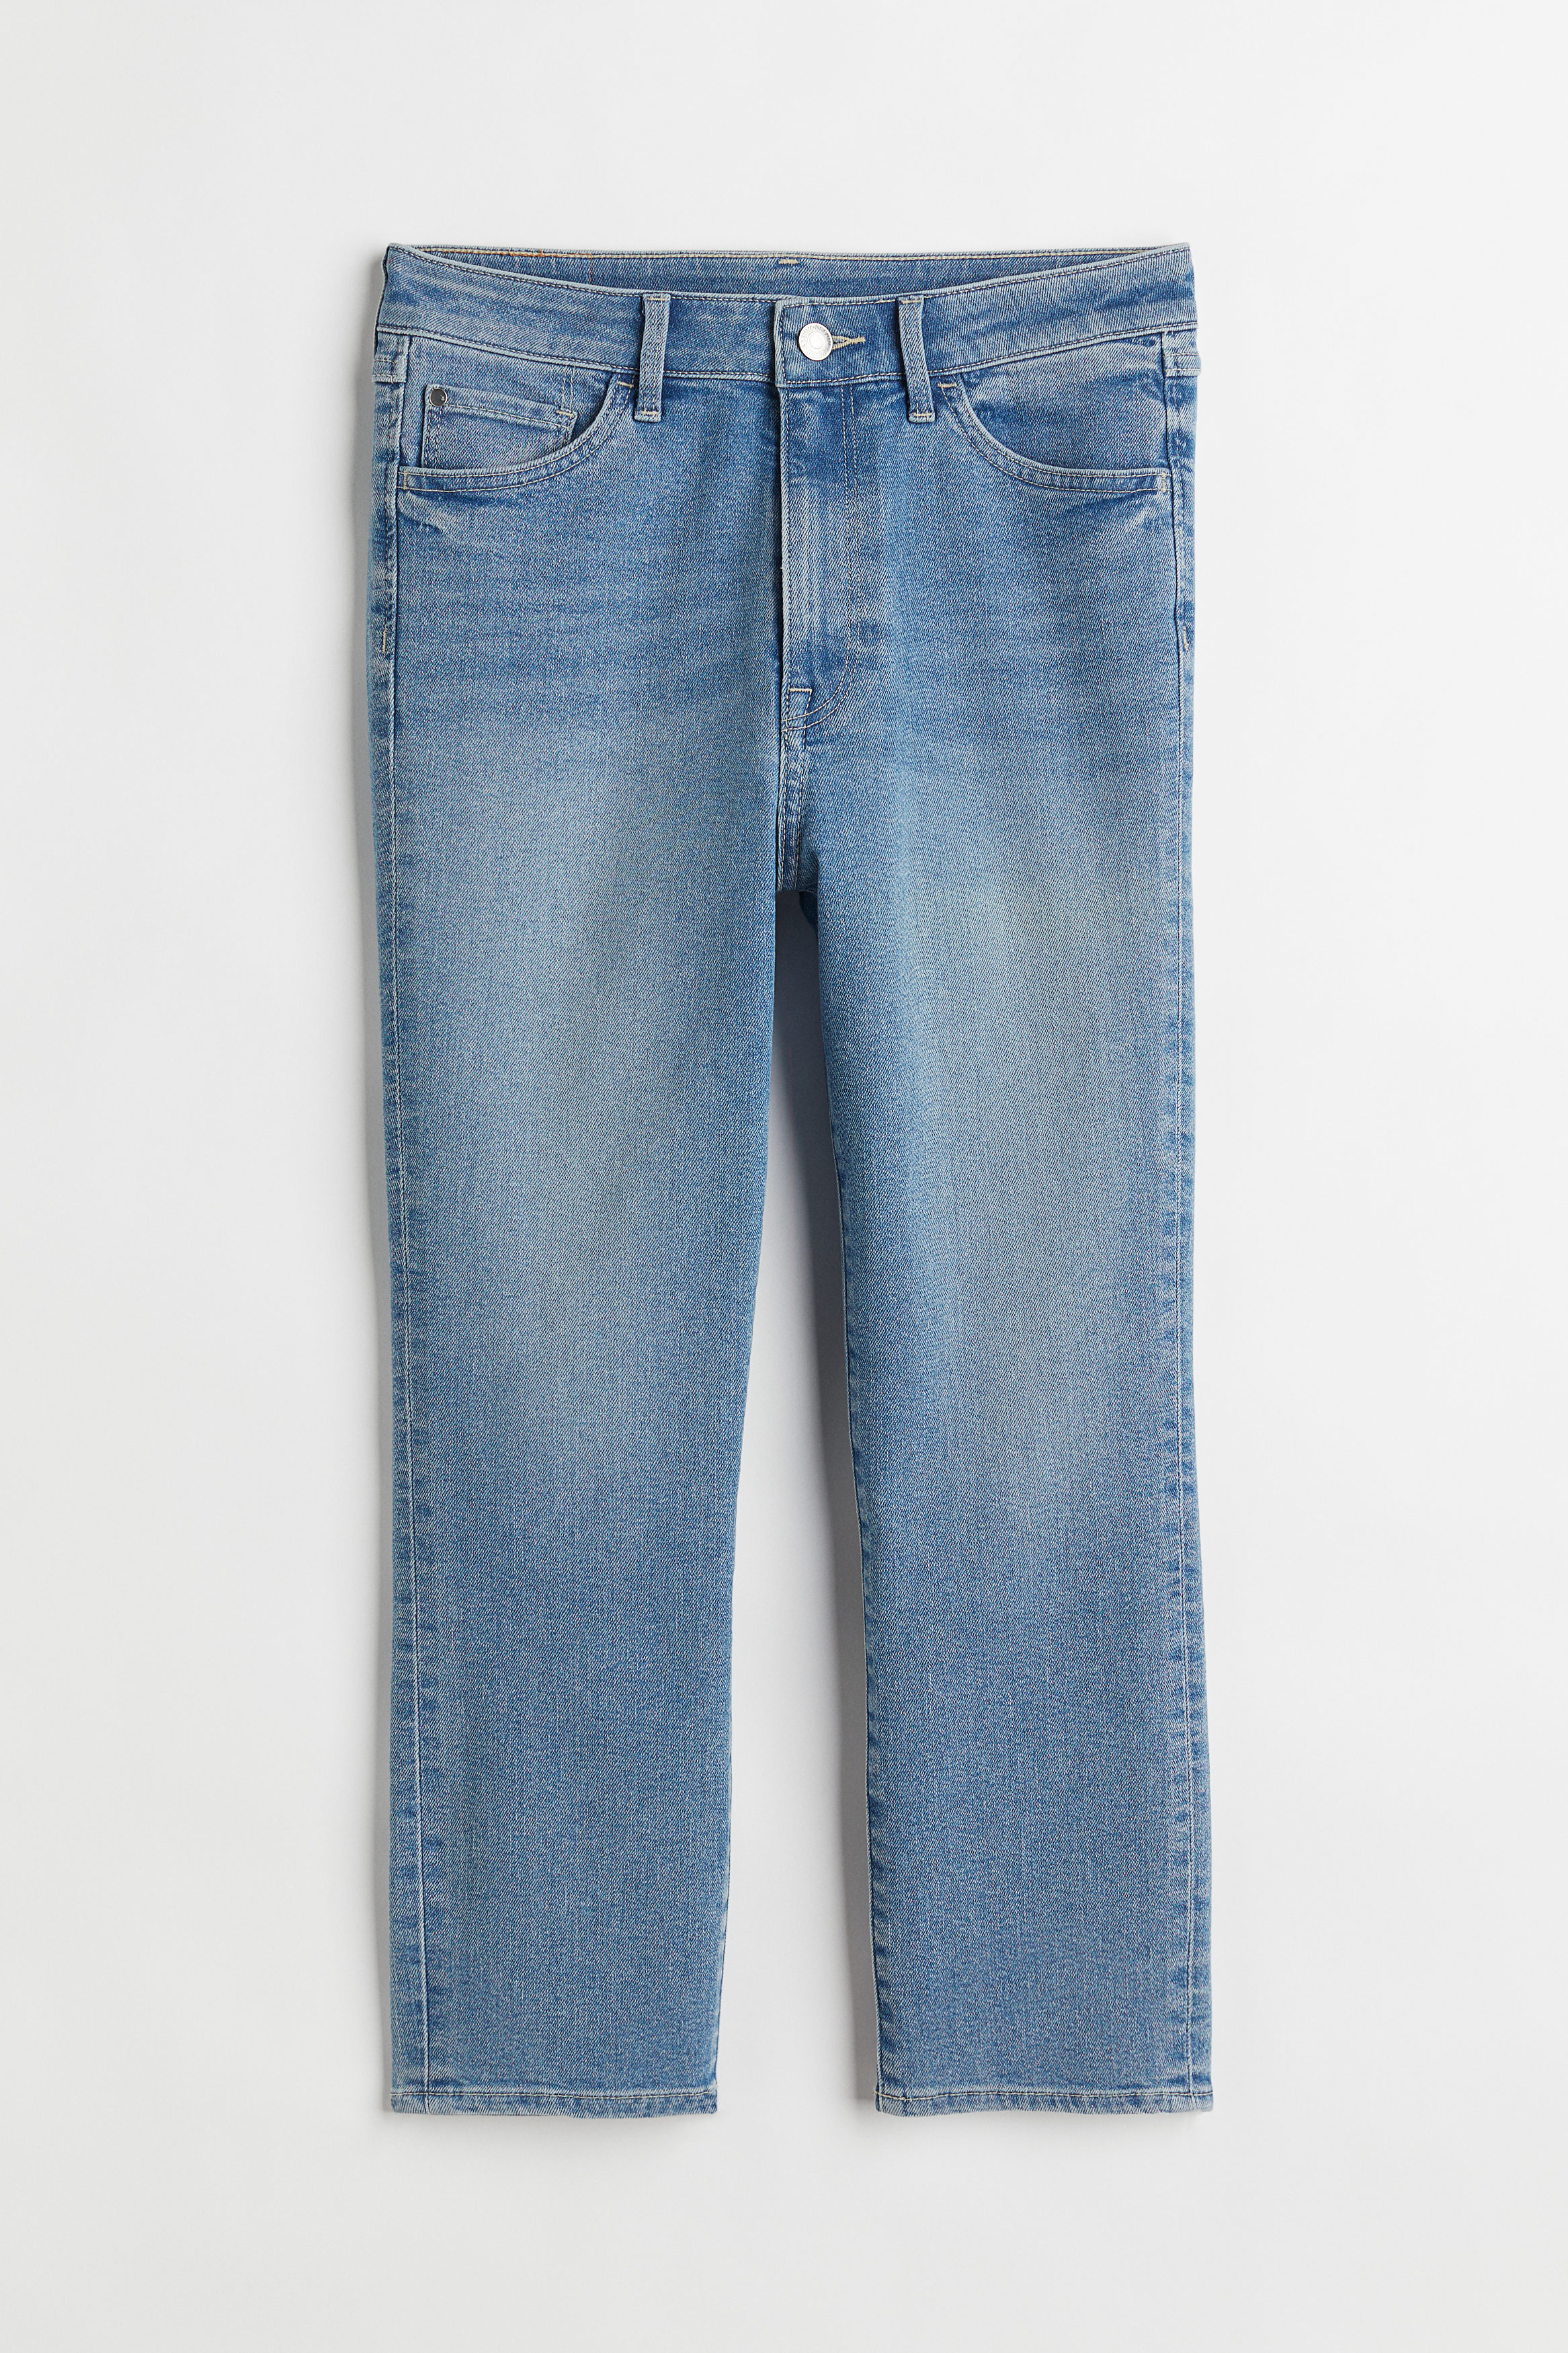 Billede af H&M Skinny High Cropped Jeans Denimblå, jeans. Farve: Denim blue 009 I størrelse 32